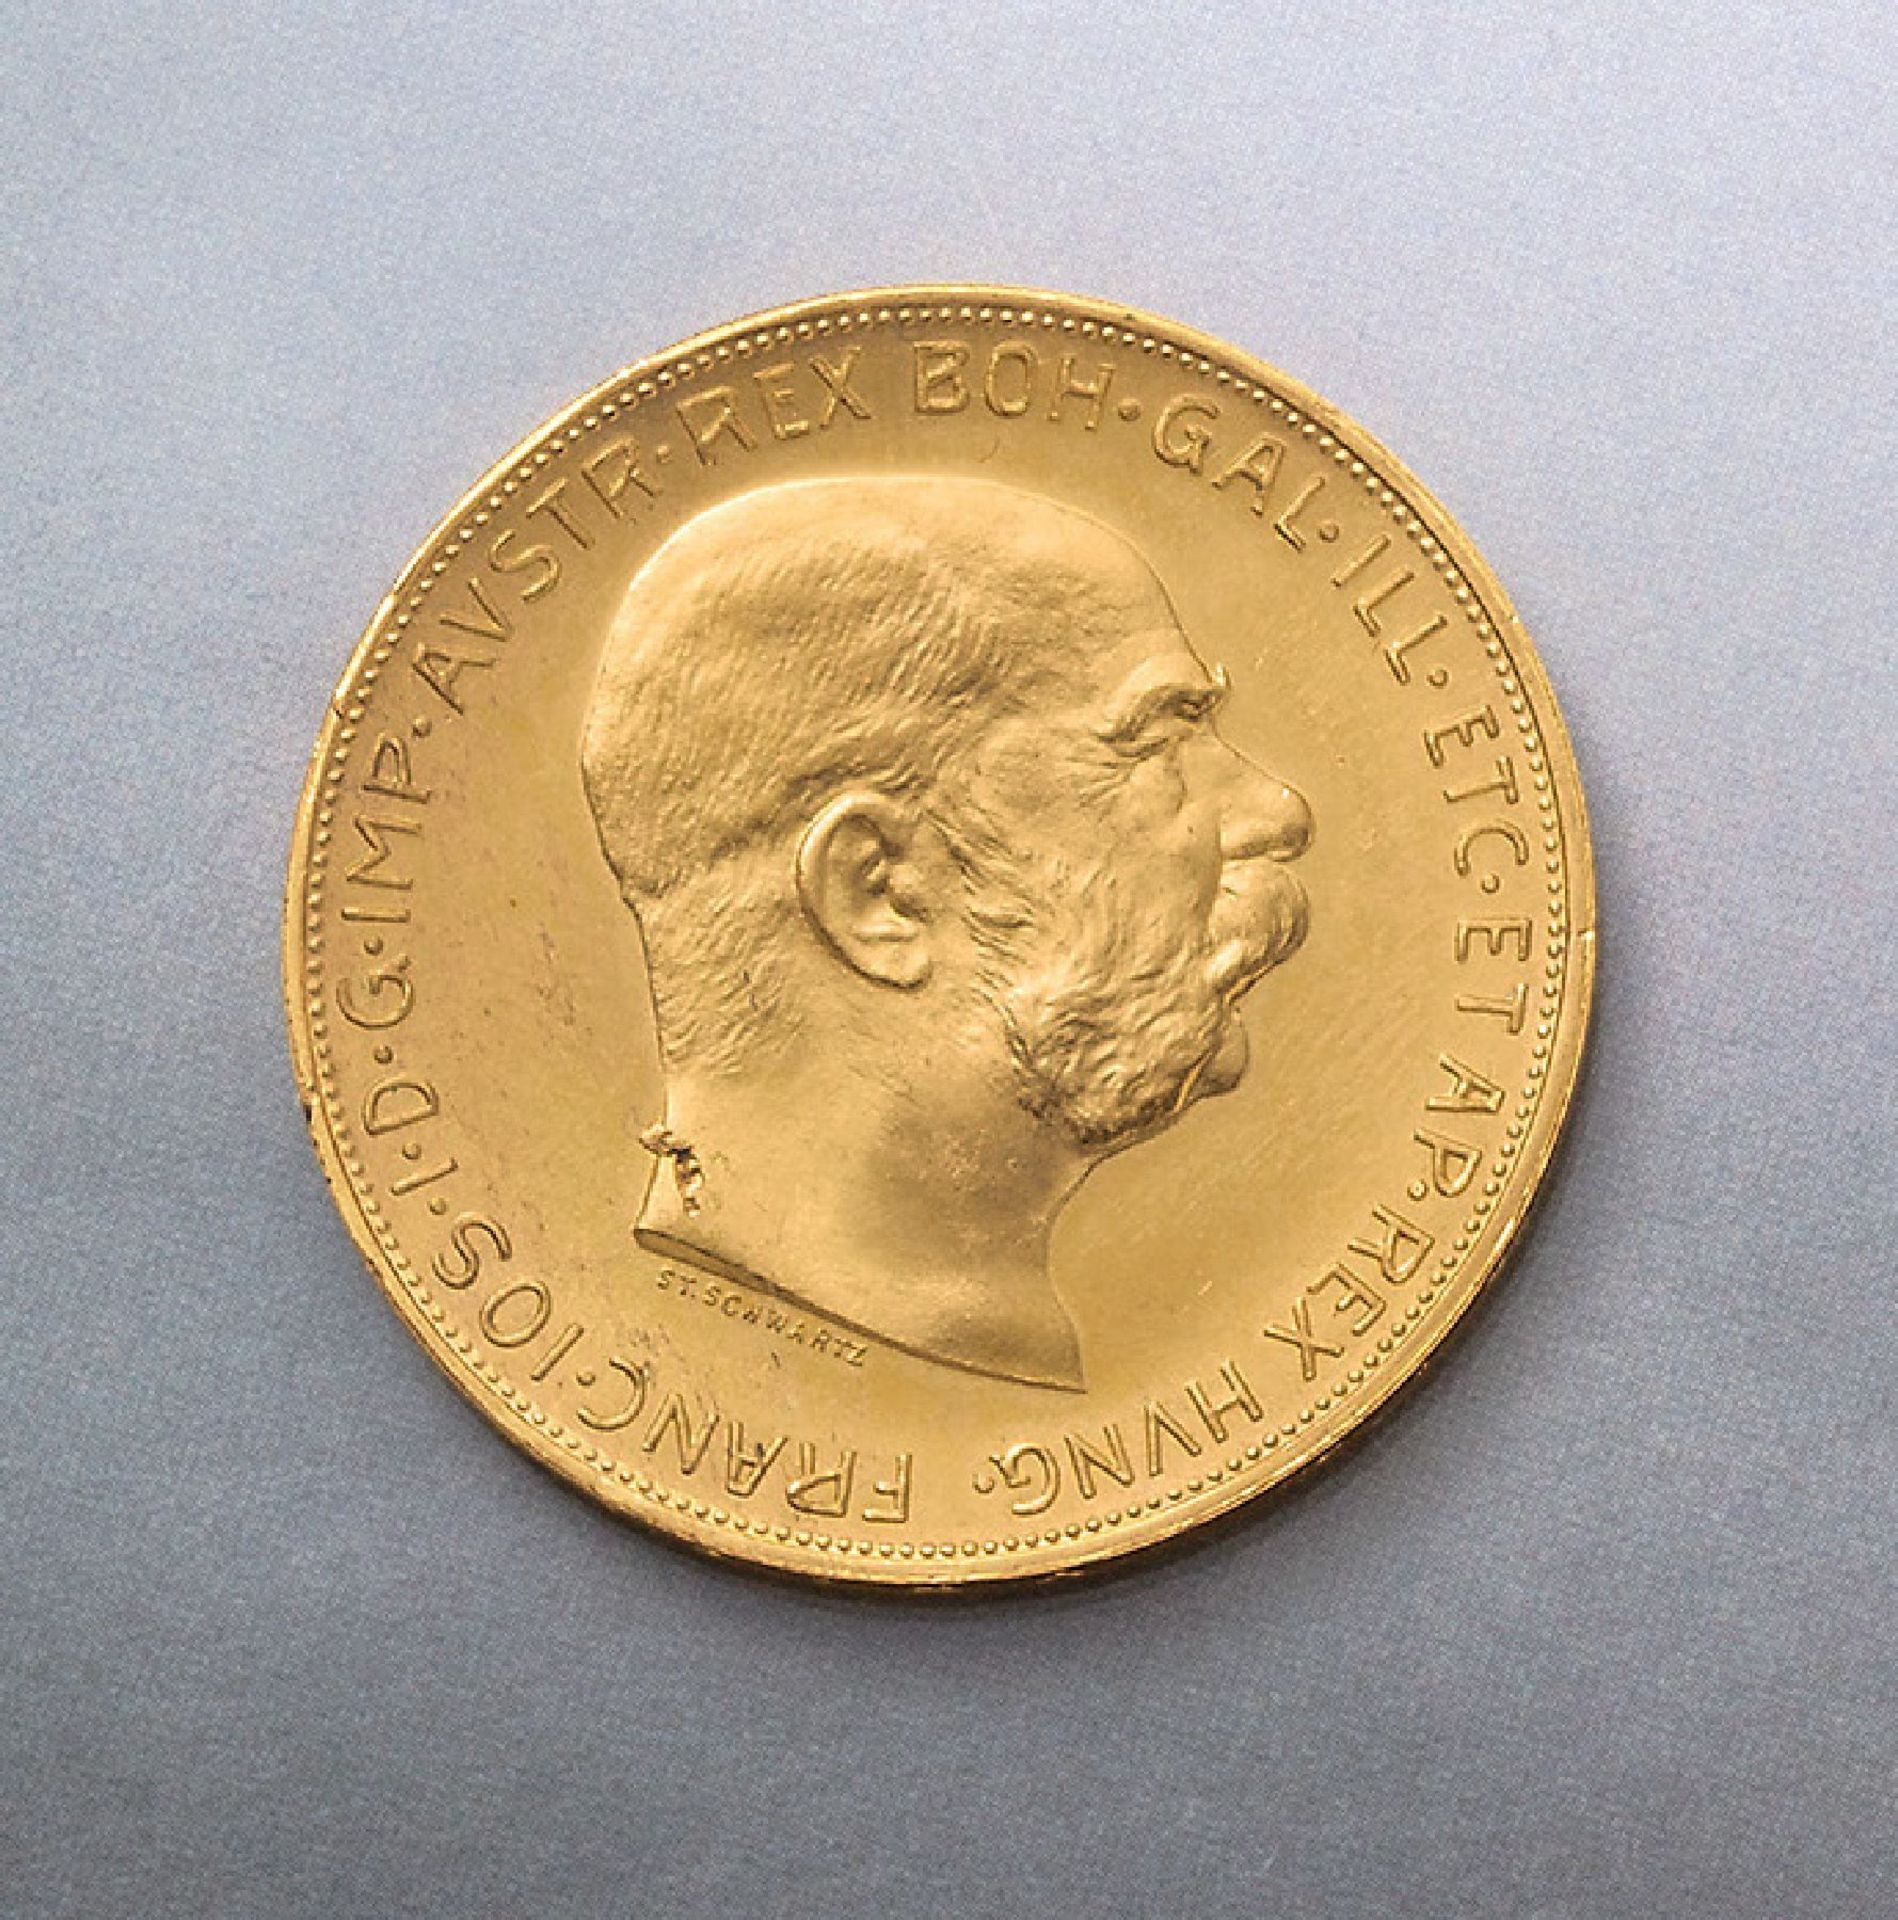 Goldmünze, 100 Kronen, Österreich-Ungarn, 1915, Franz Joseph I., offizielle Nachprägung, RV: